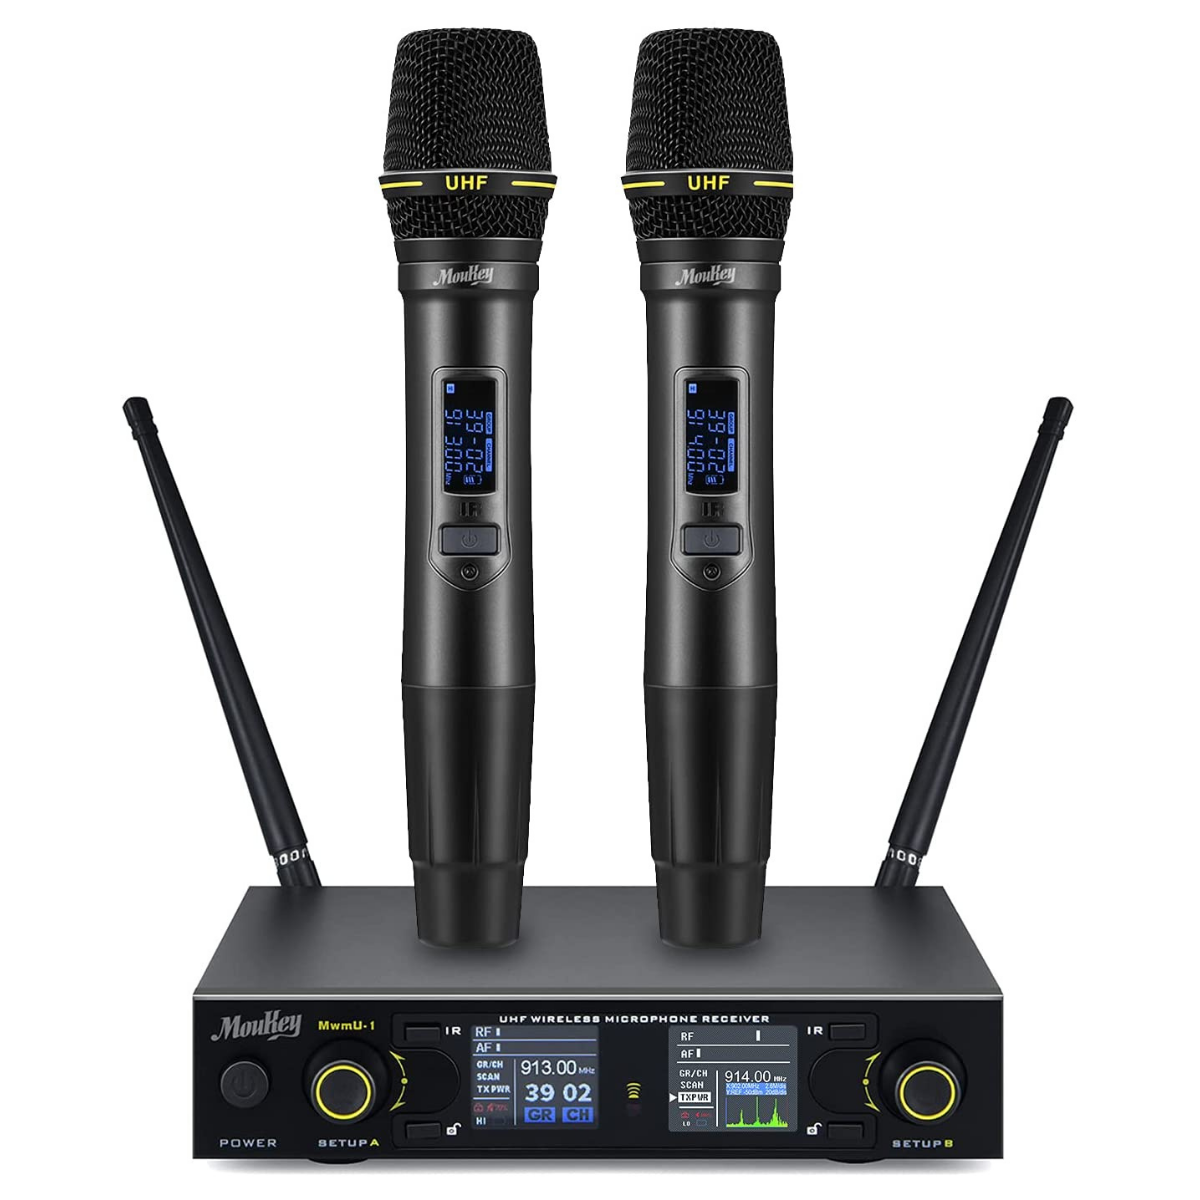 

Monkey MwmU-1 UHF Wireless Microphone System